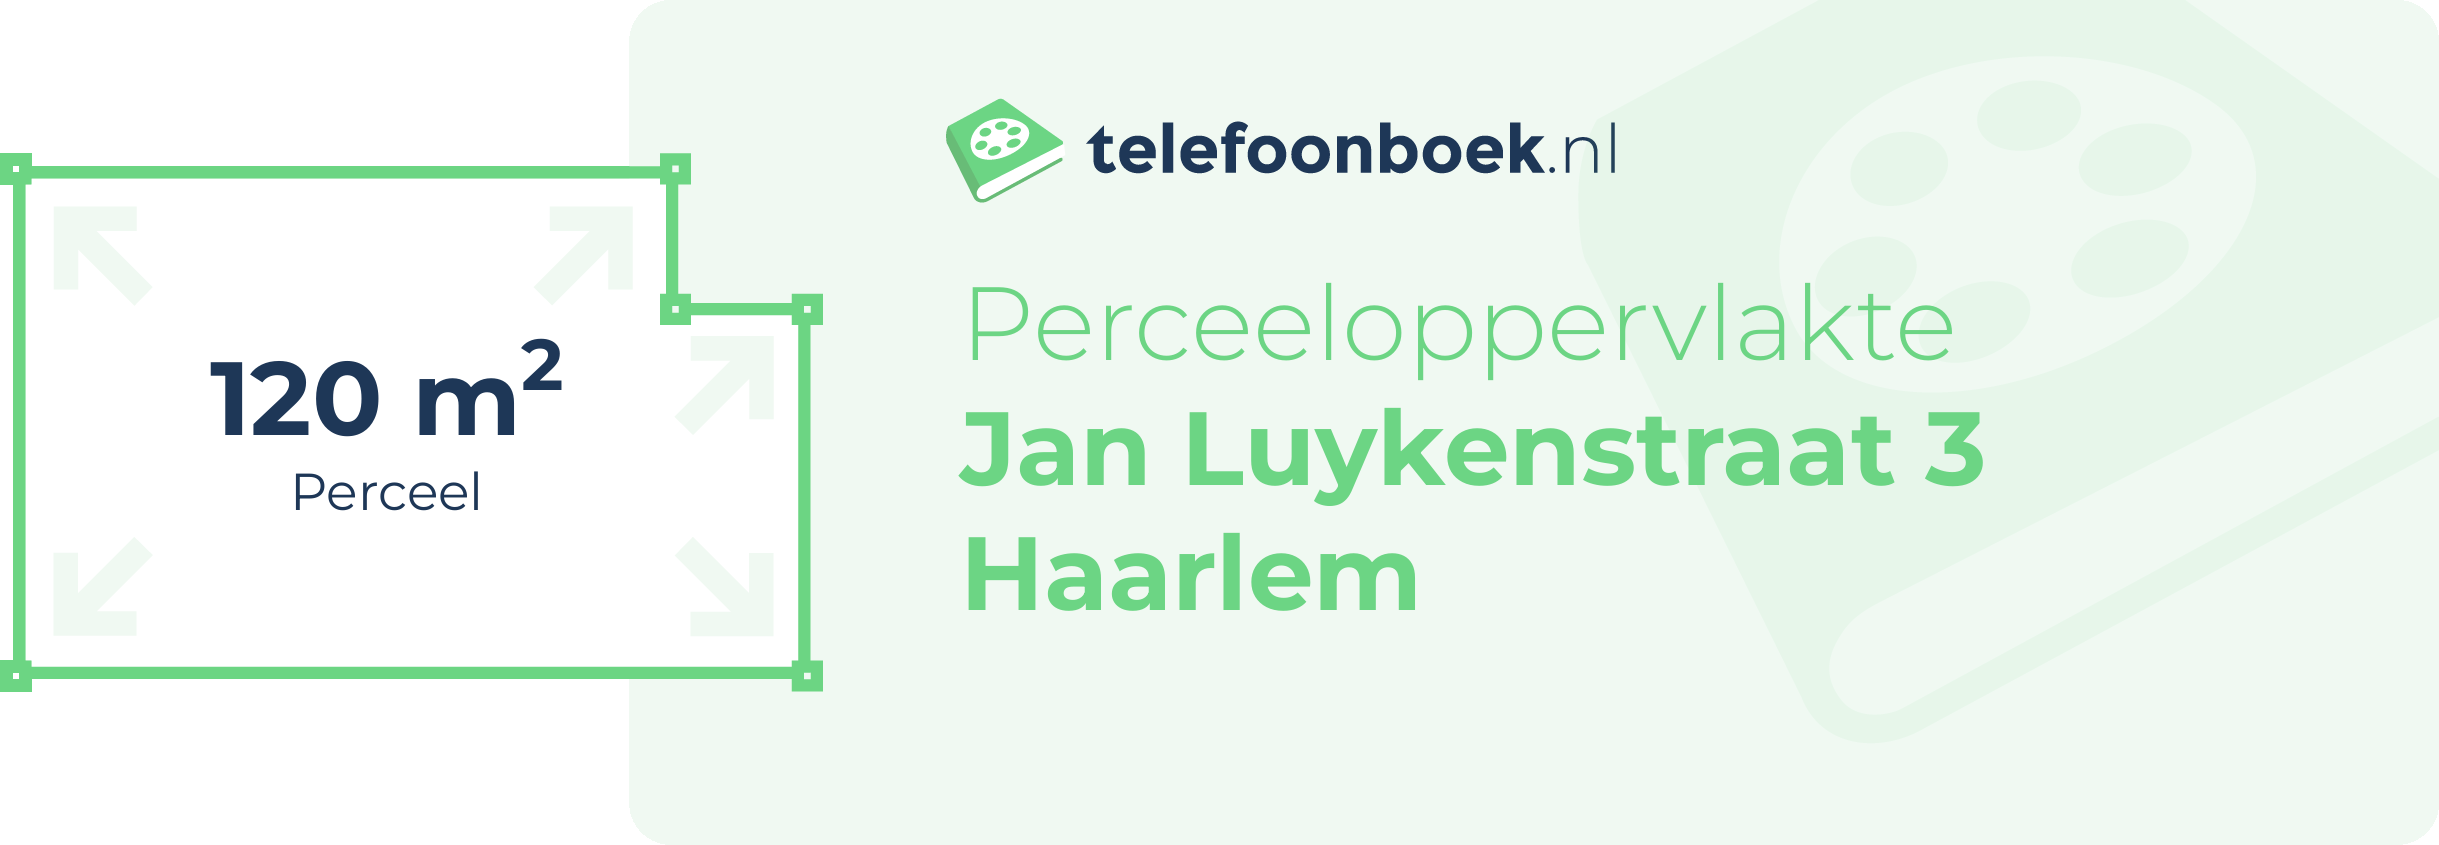 Perceeloppervlakte Jan Luykenstraat 3 Haarlem